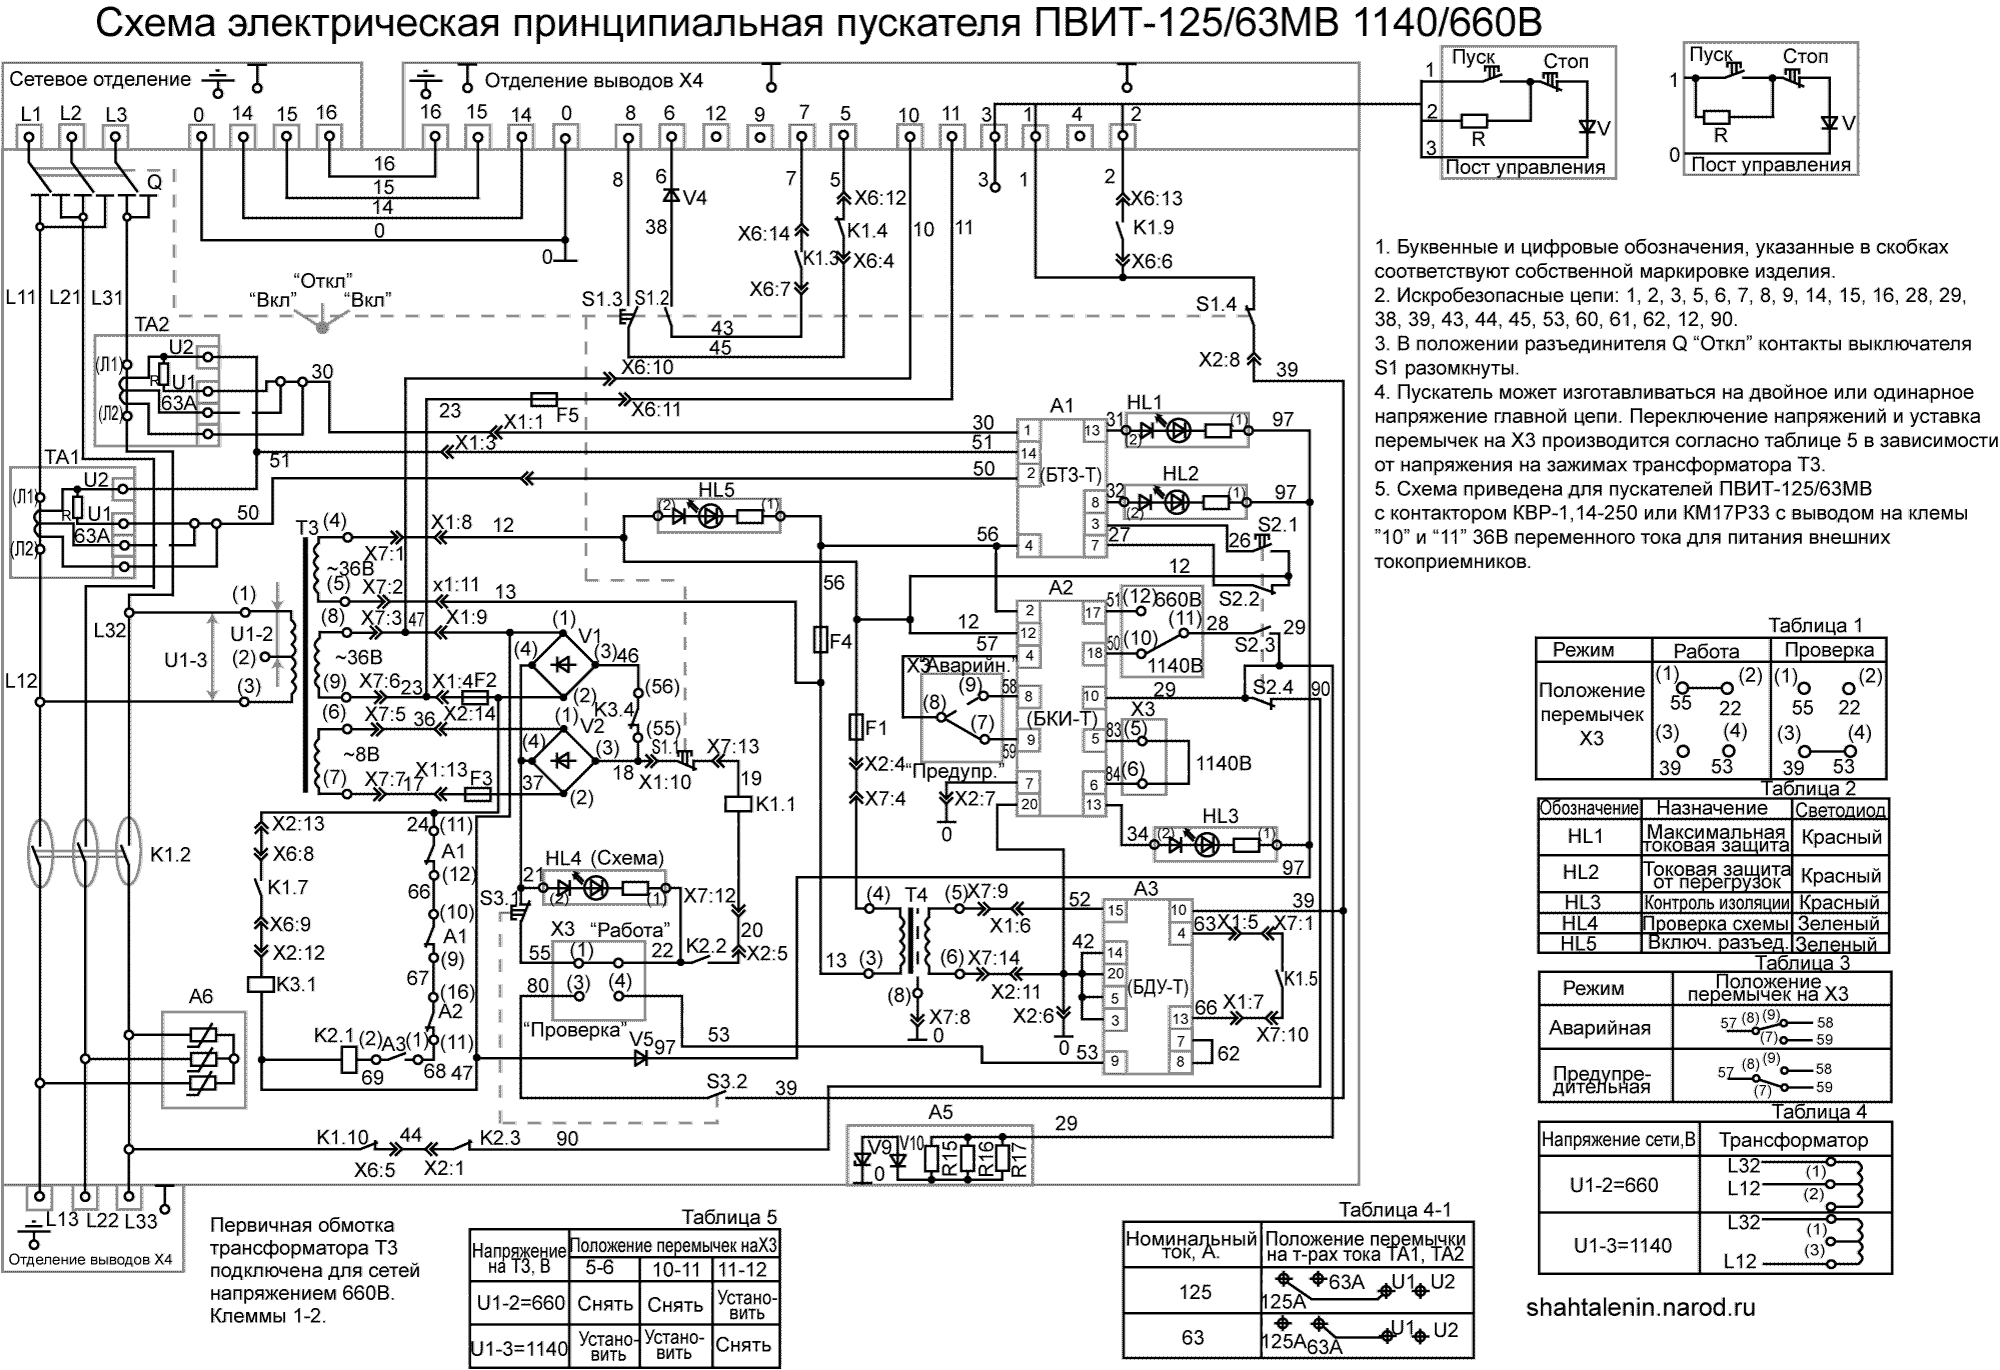 Схема электрическая принципиальная ПВИТ-125/63МВ 660/1140В